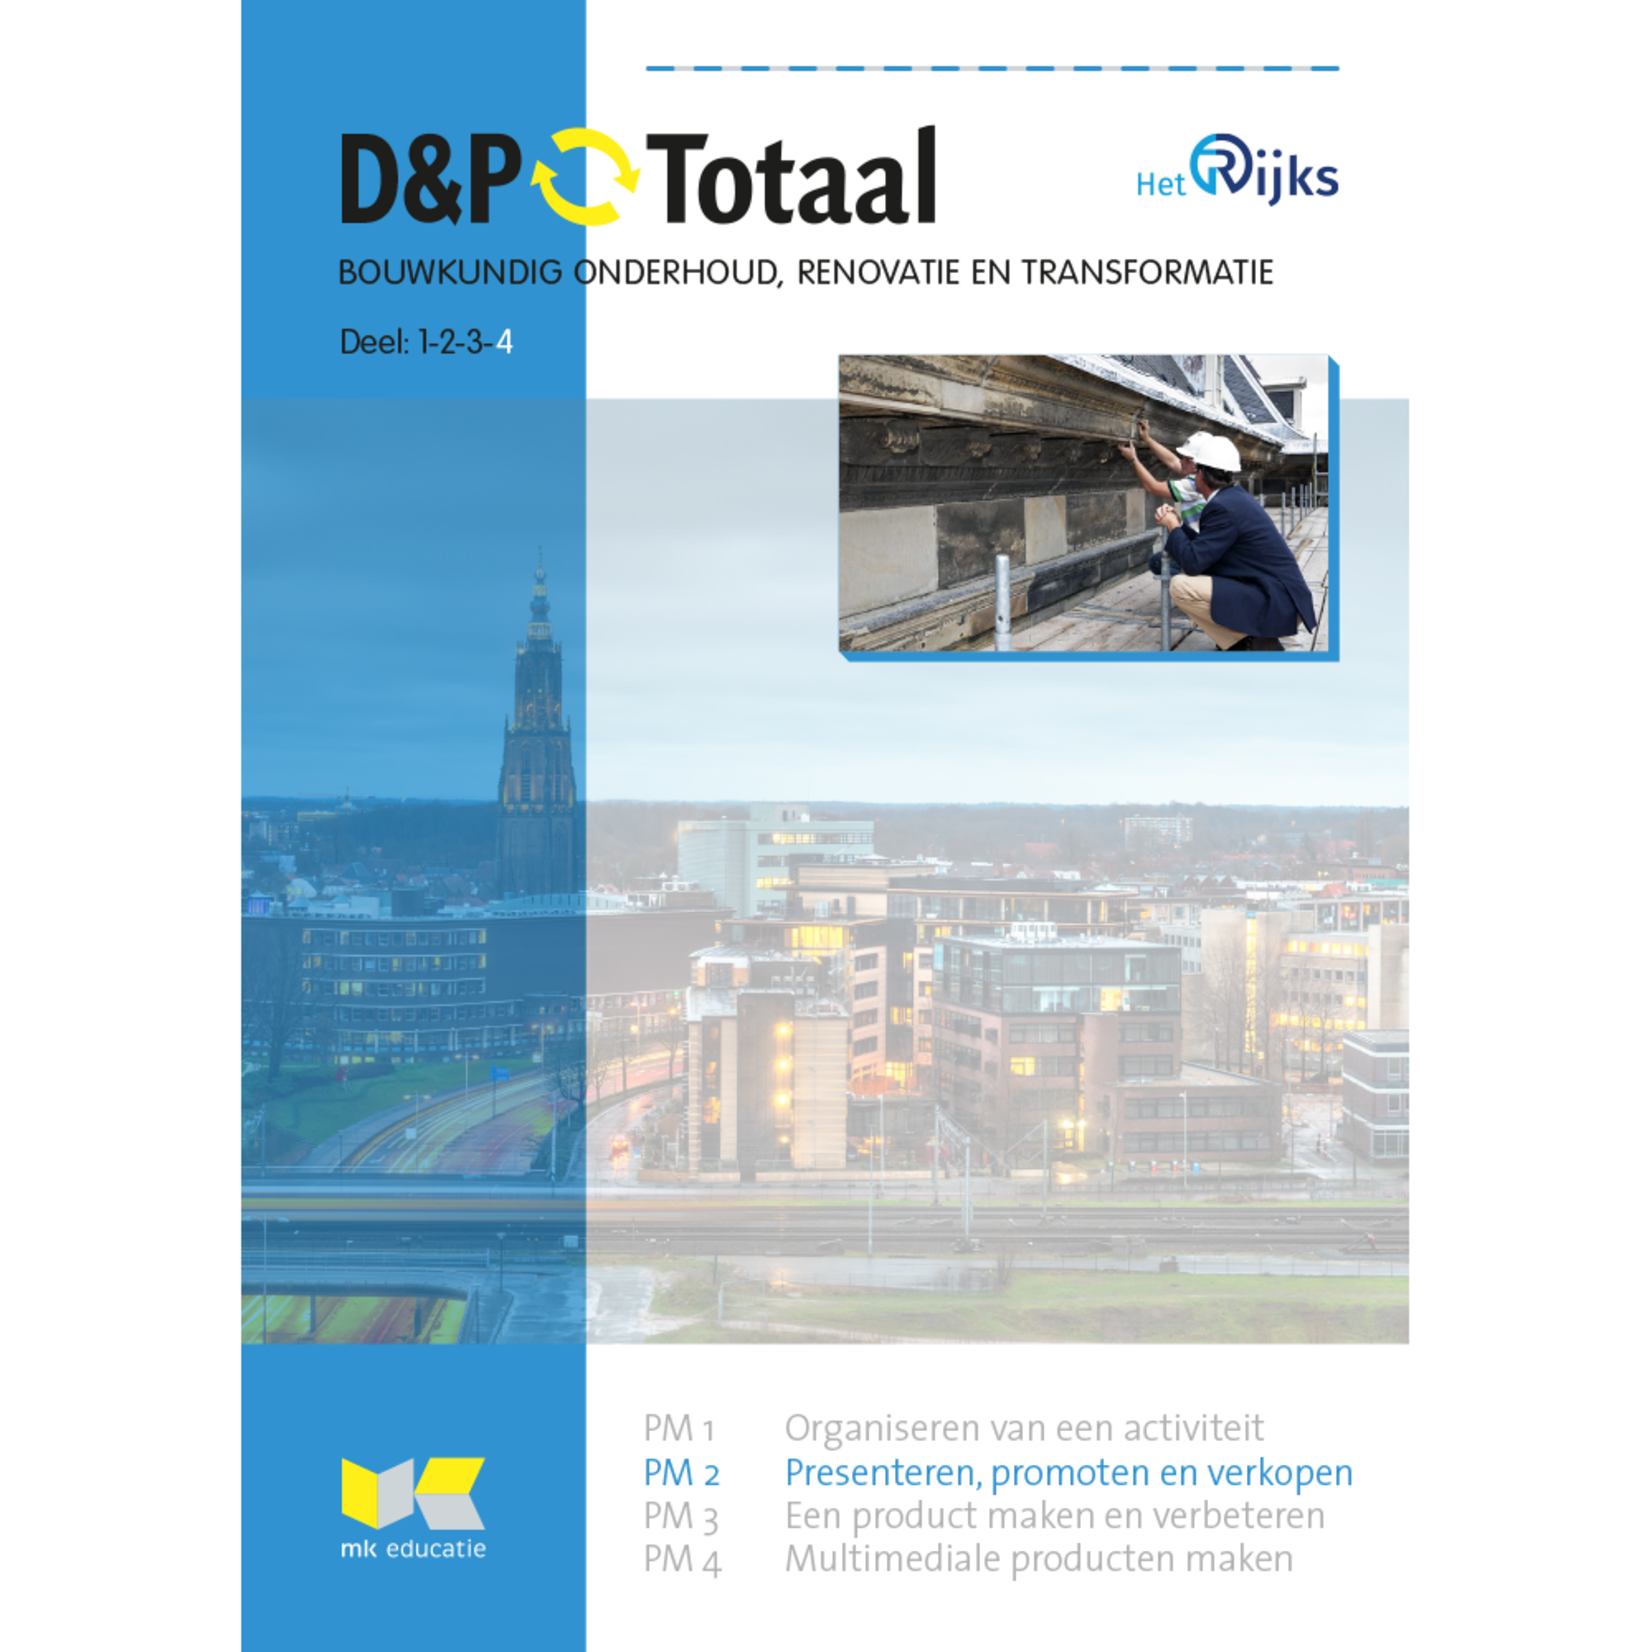 D&P-Totaal - BWI Bouwkundig onderhoud, renovatie en transformatie (PM2/1224)